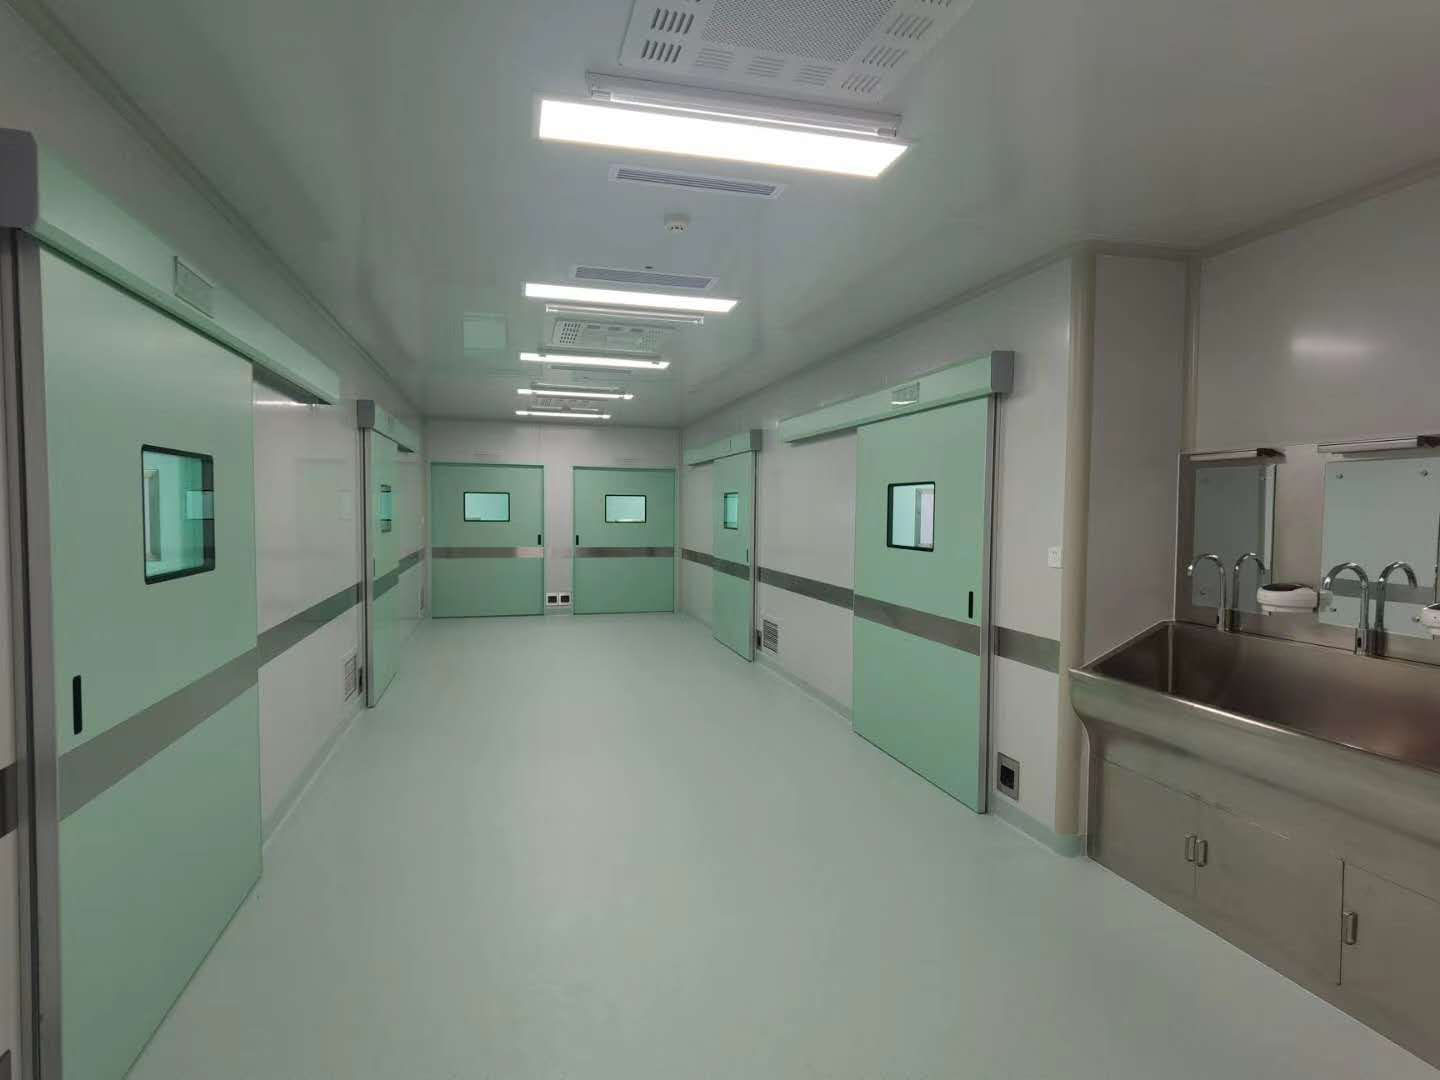 शेनयांग सहावे पीपल्स हॉस्पिटल